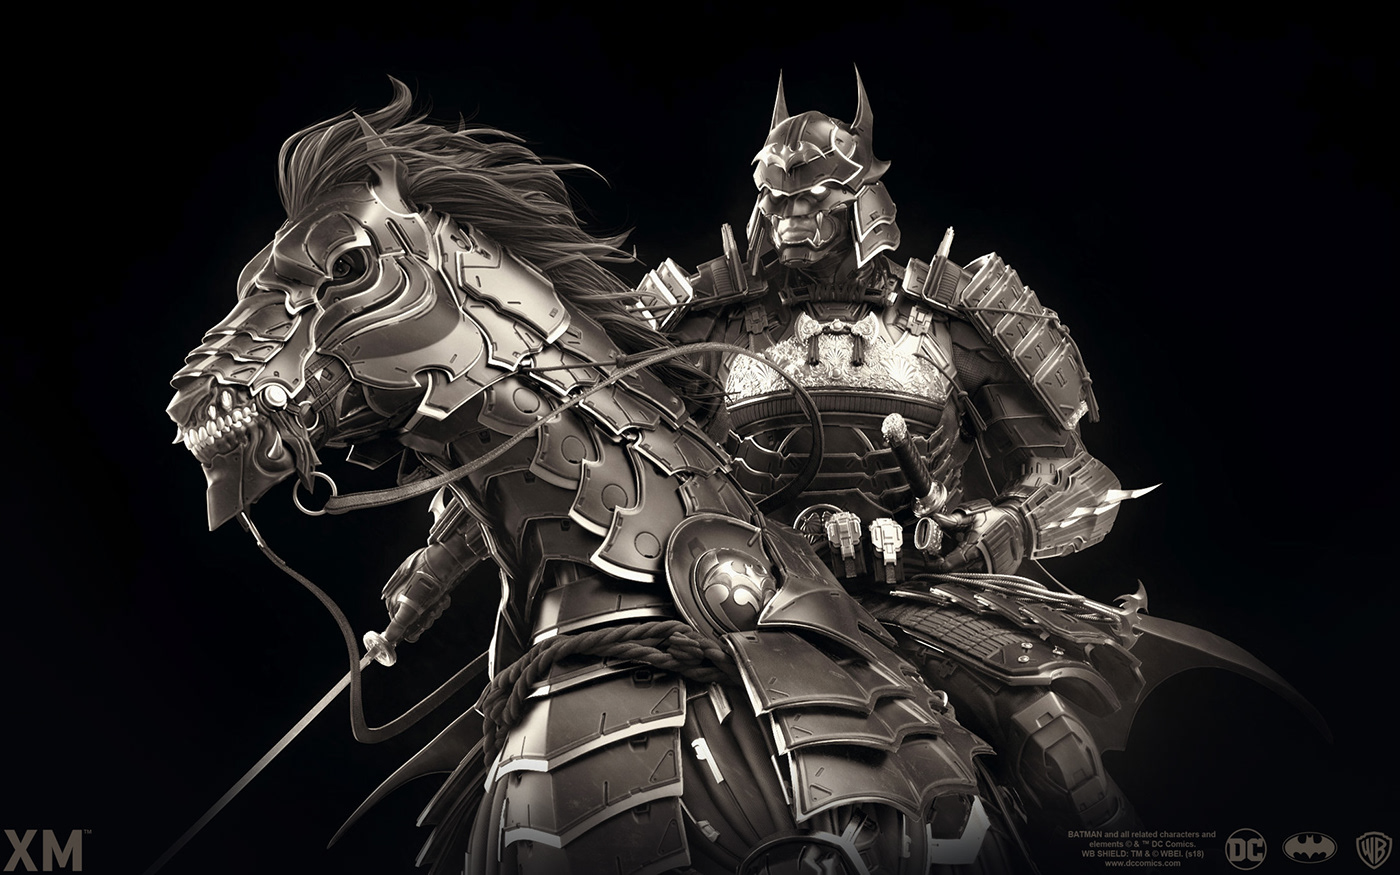 batman shogun japan Armor samurai ninja horse warrior army